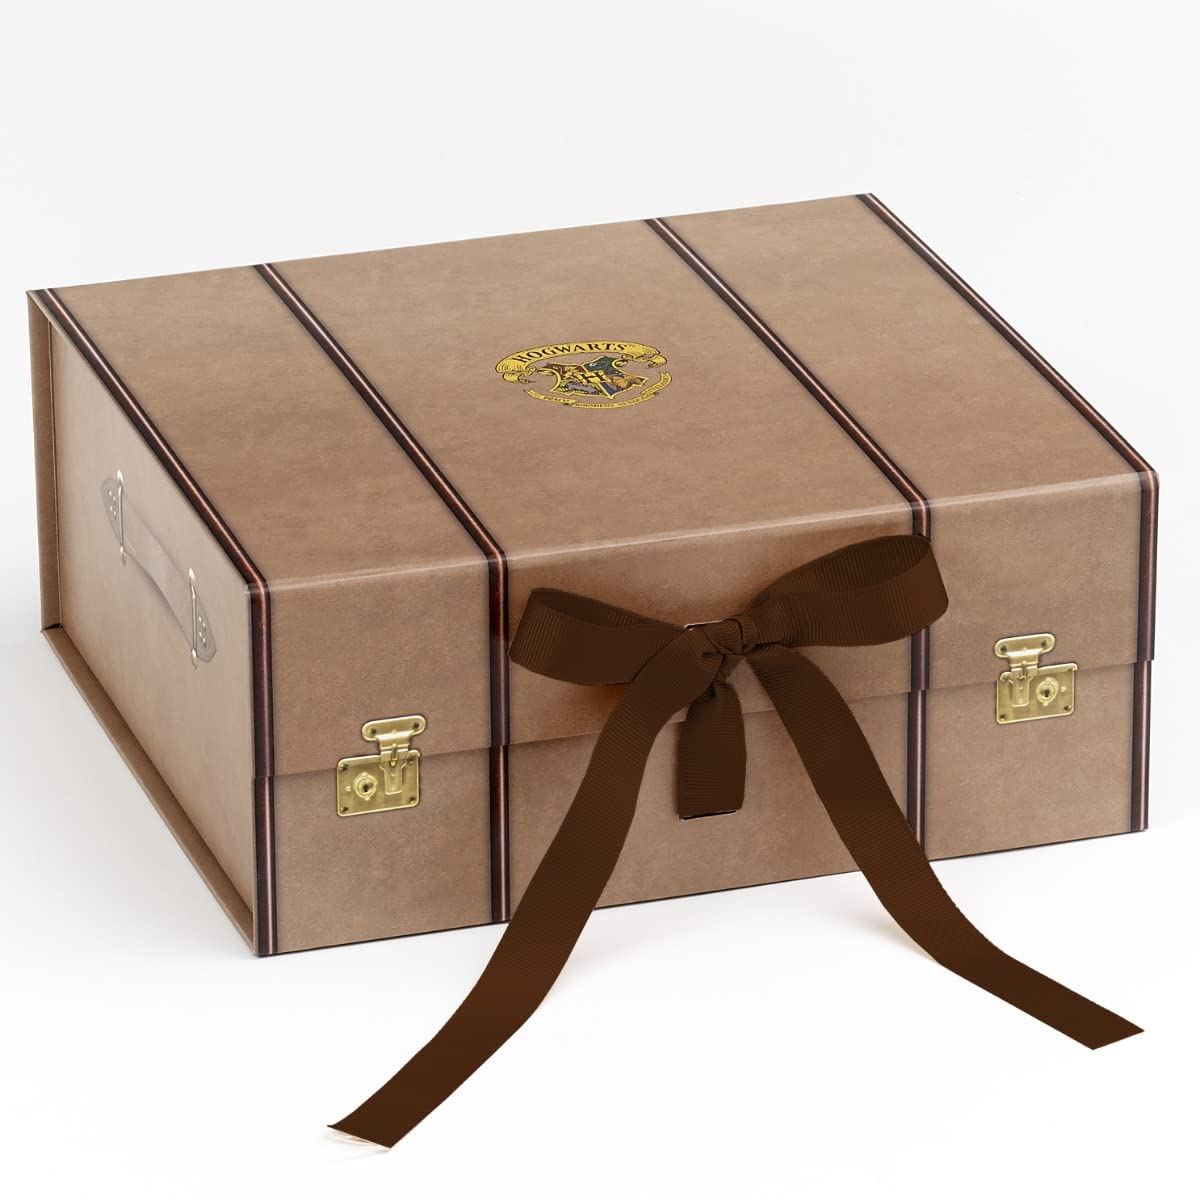 The Carat Shop Offizielle Harry Potter Trunk Geschenk-Box, Größe M, wird flach verpackt geliefert